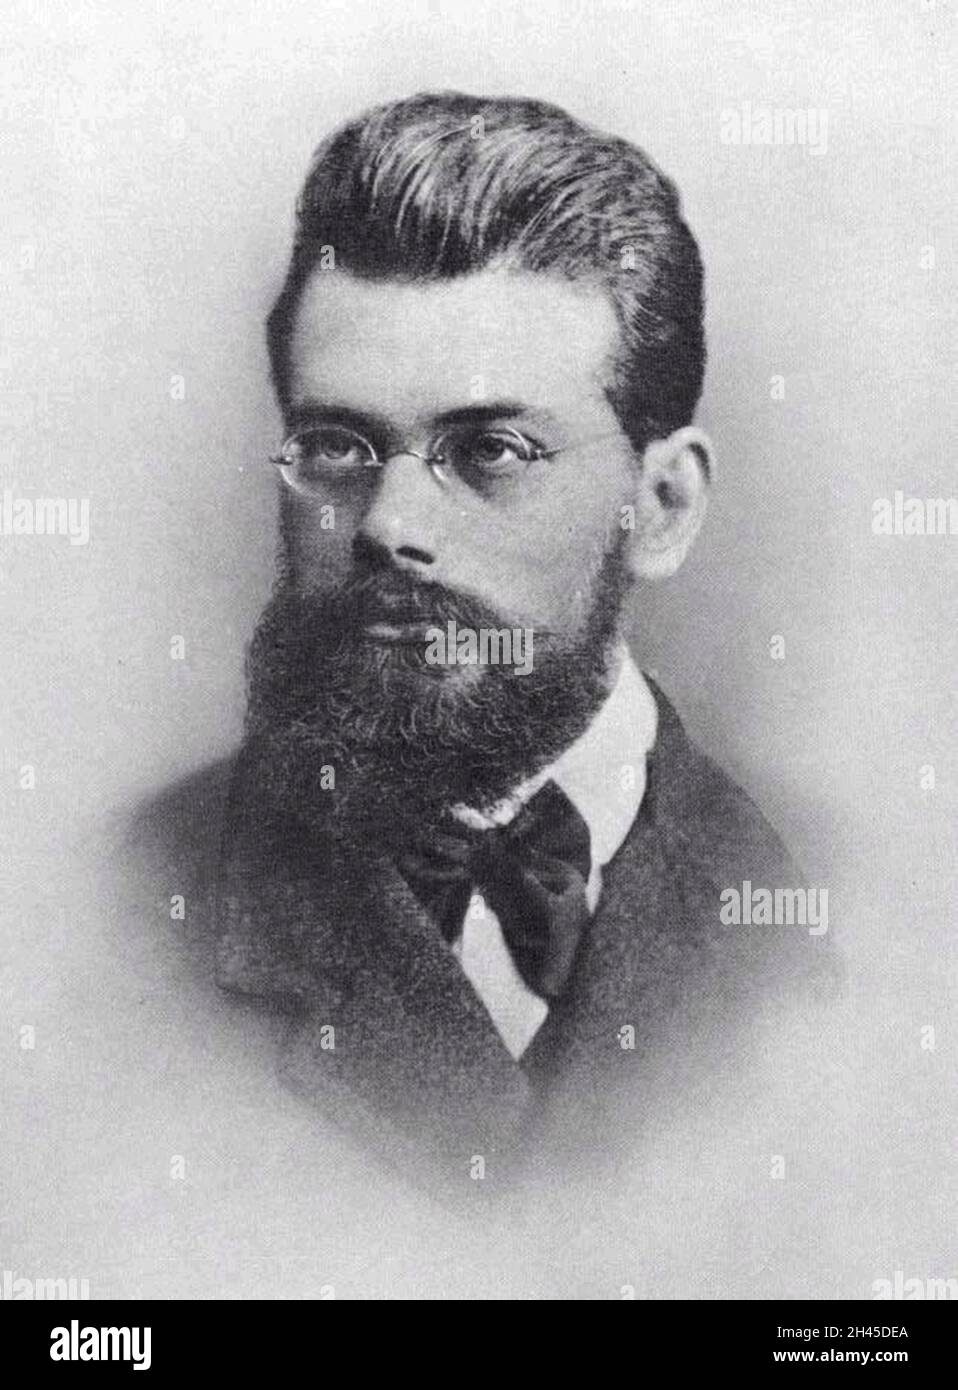 Ritratto del 19esimo secolo statistico austriaco e fisico Ludwig Boltzmann Foto Stock